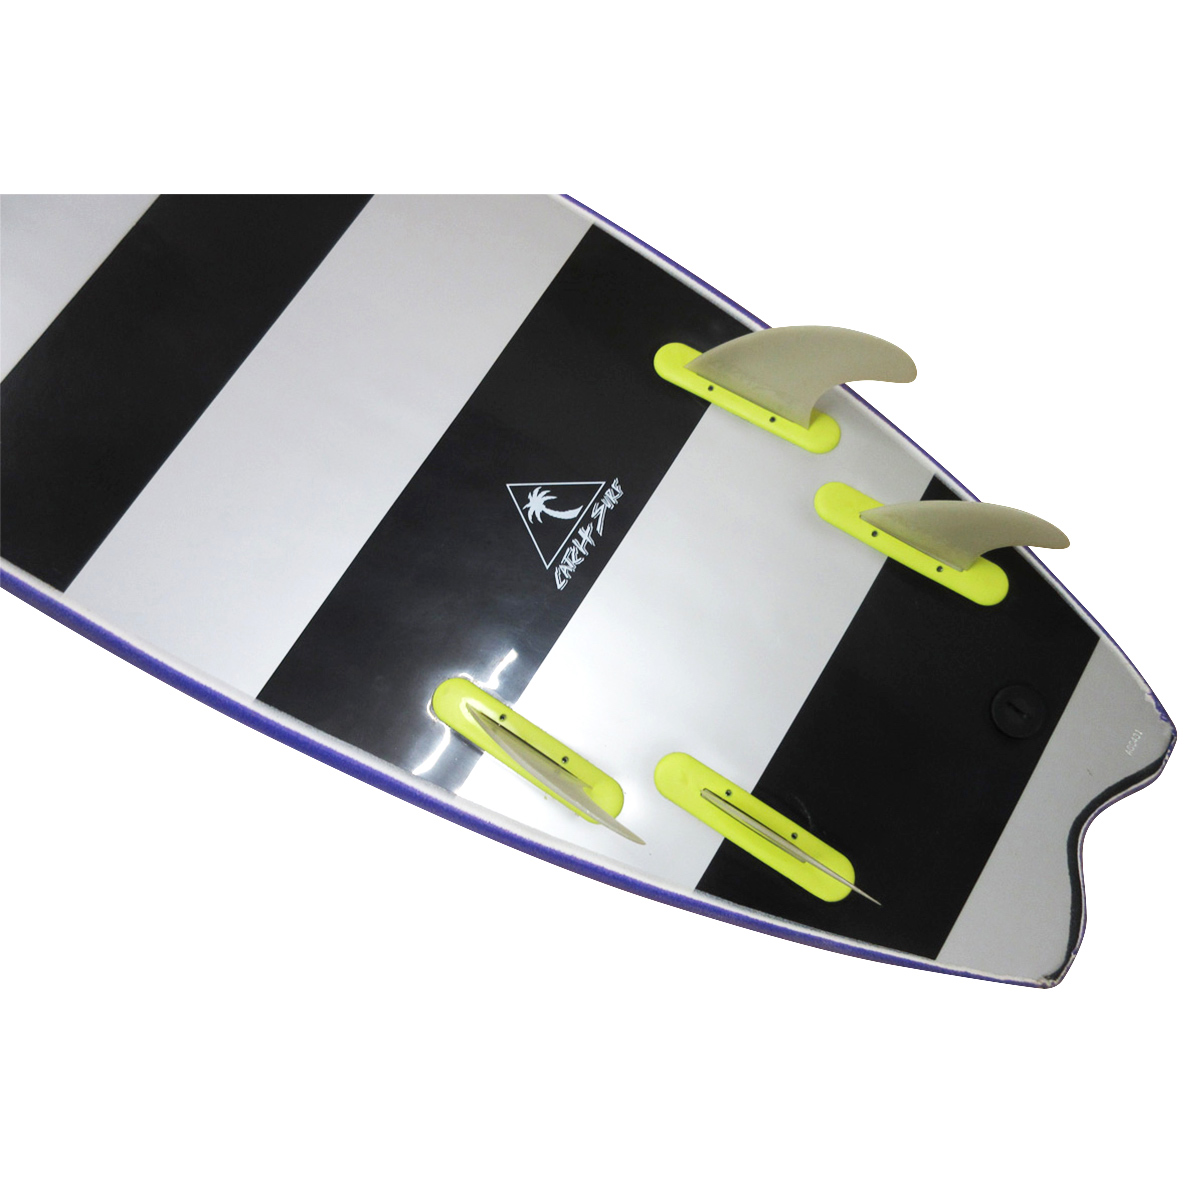 CATCH SURF / Odysea Skipper Fish 6`0